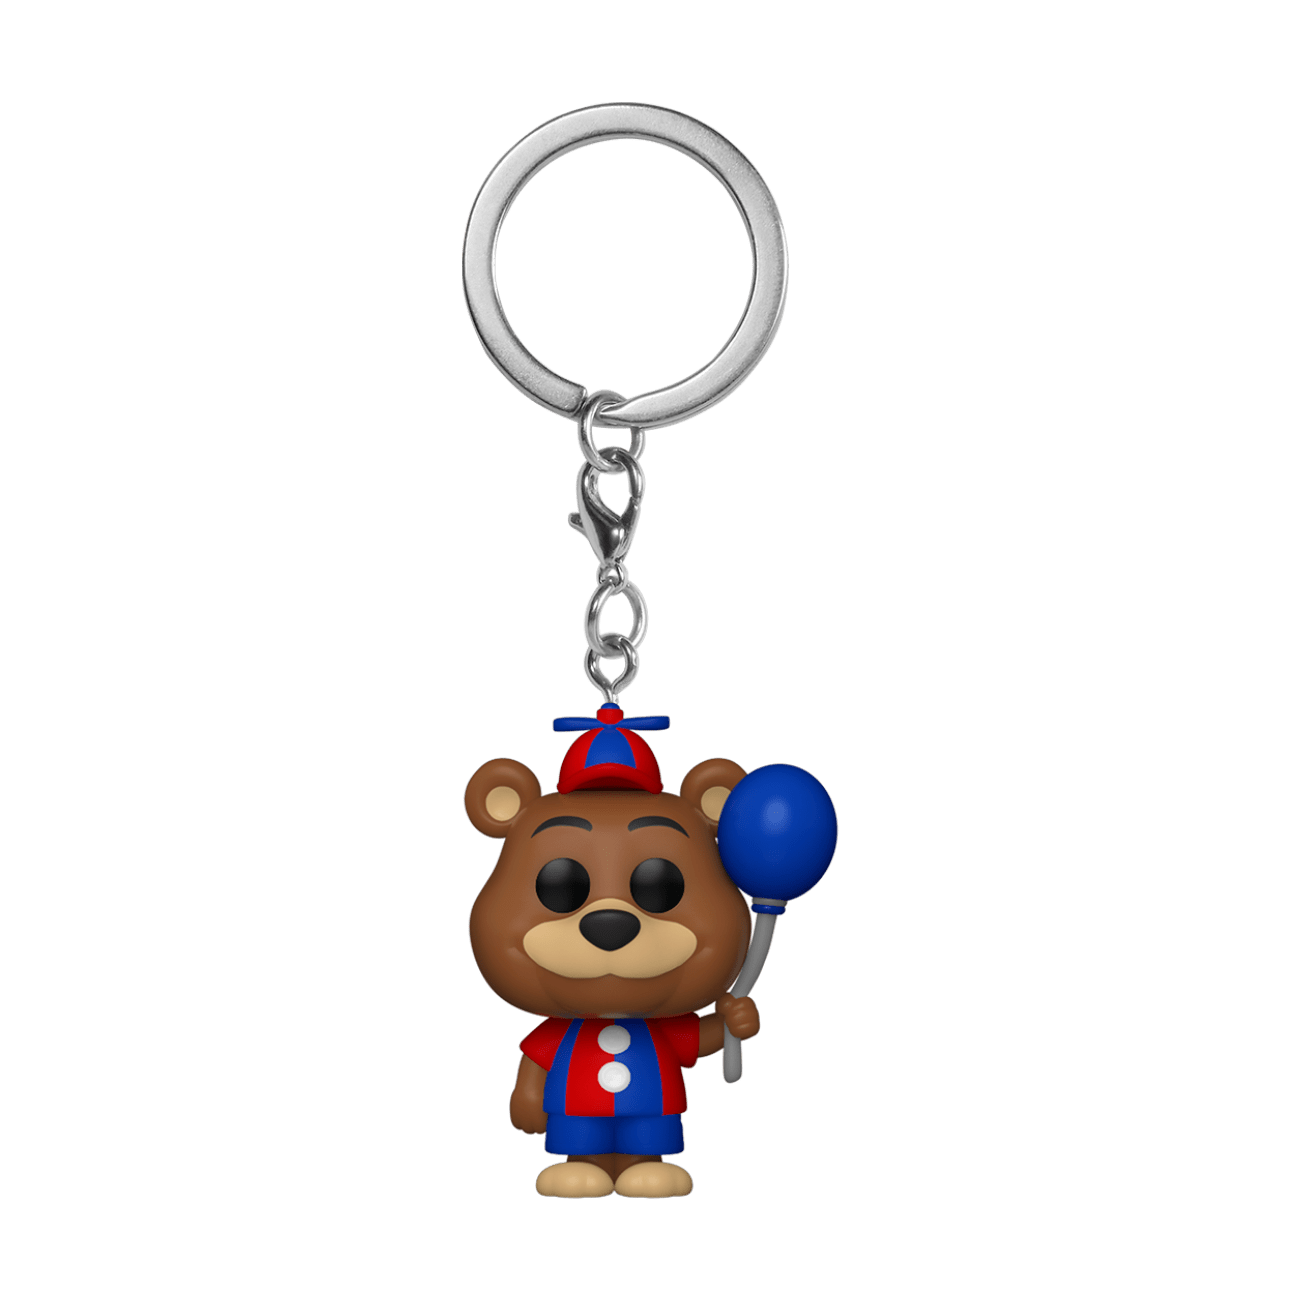 Funko Pocket Pop Keychain Five Nights At Freddys Balloon Freddy